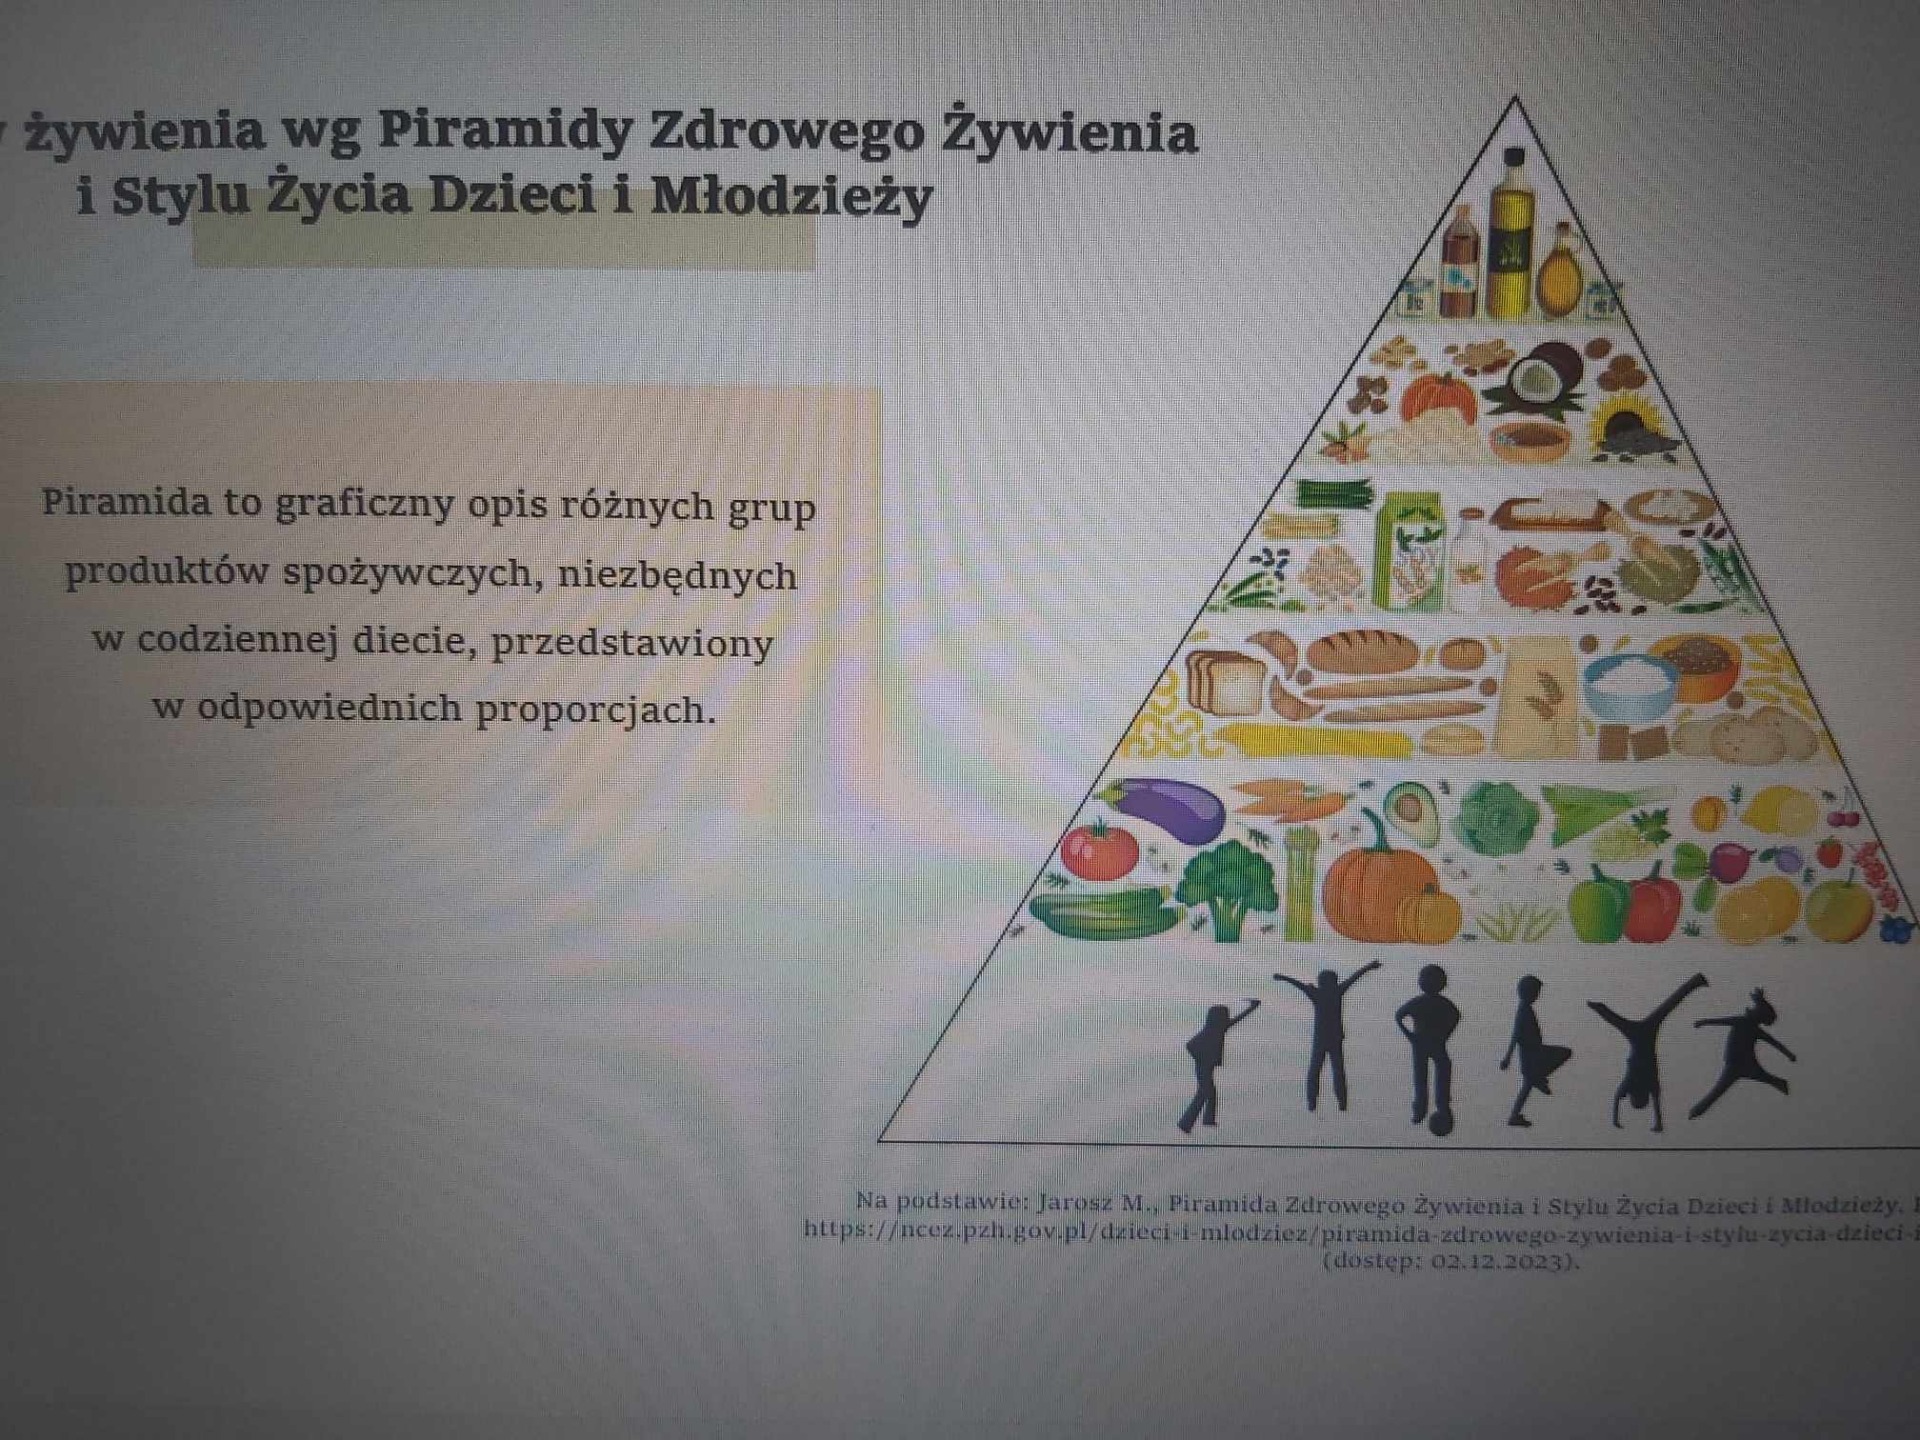 Zdrowe odżywianie i zdrowy styl życia - warsztaty profilaktyczne - Obrazek 1